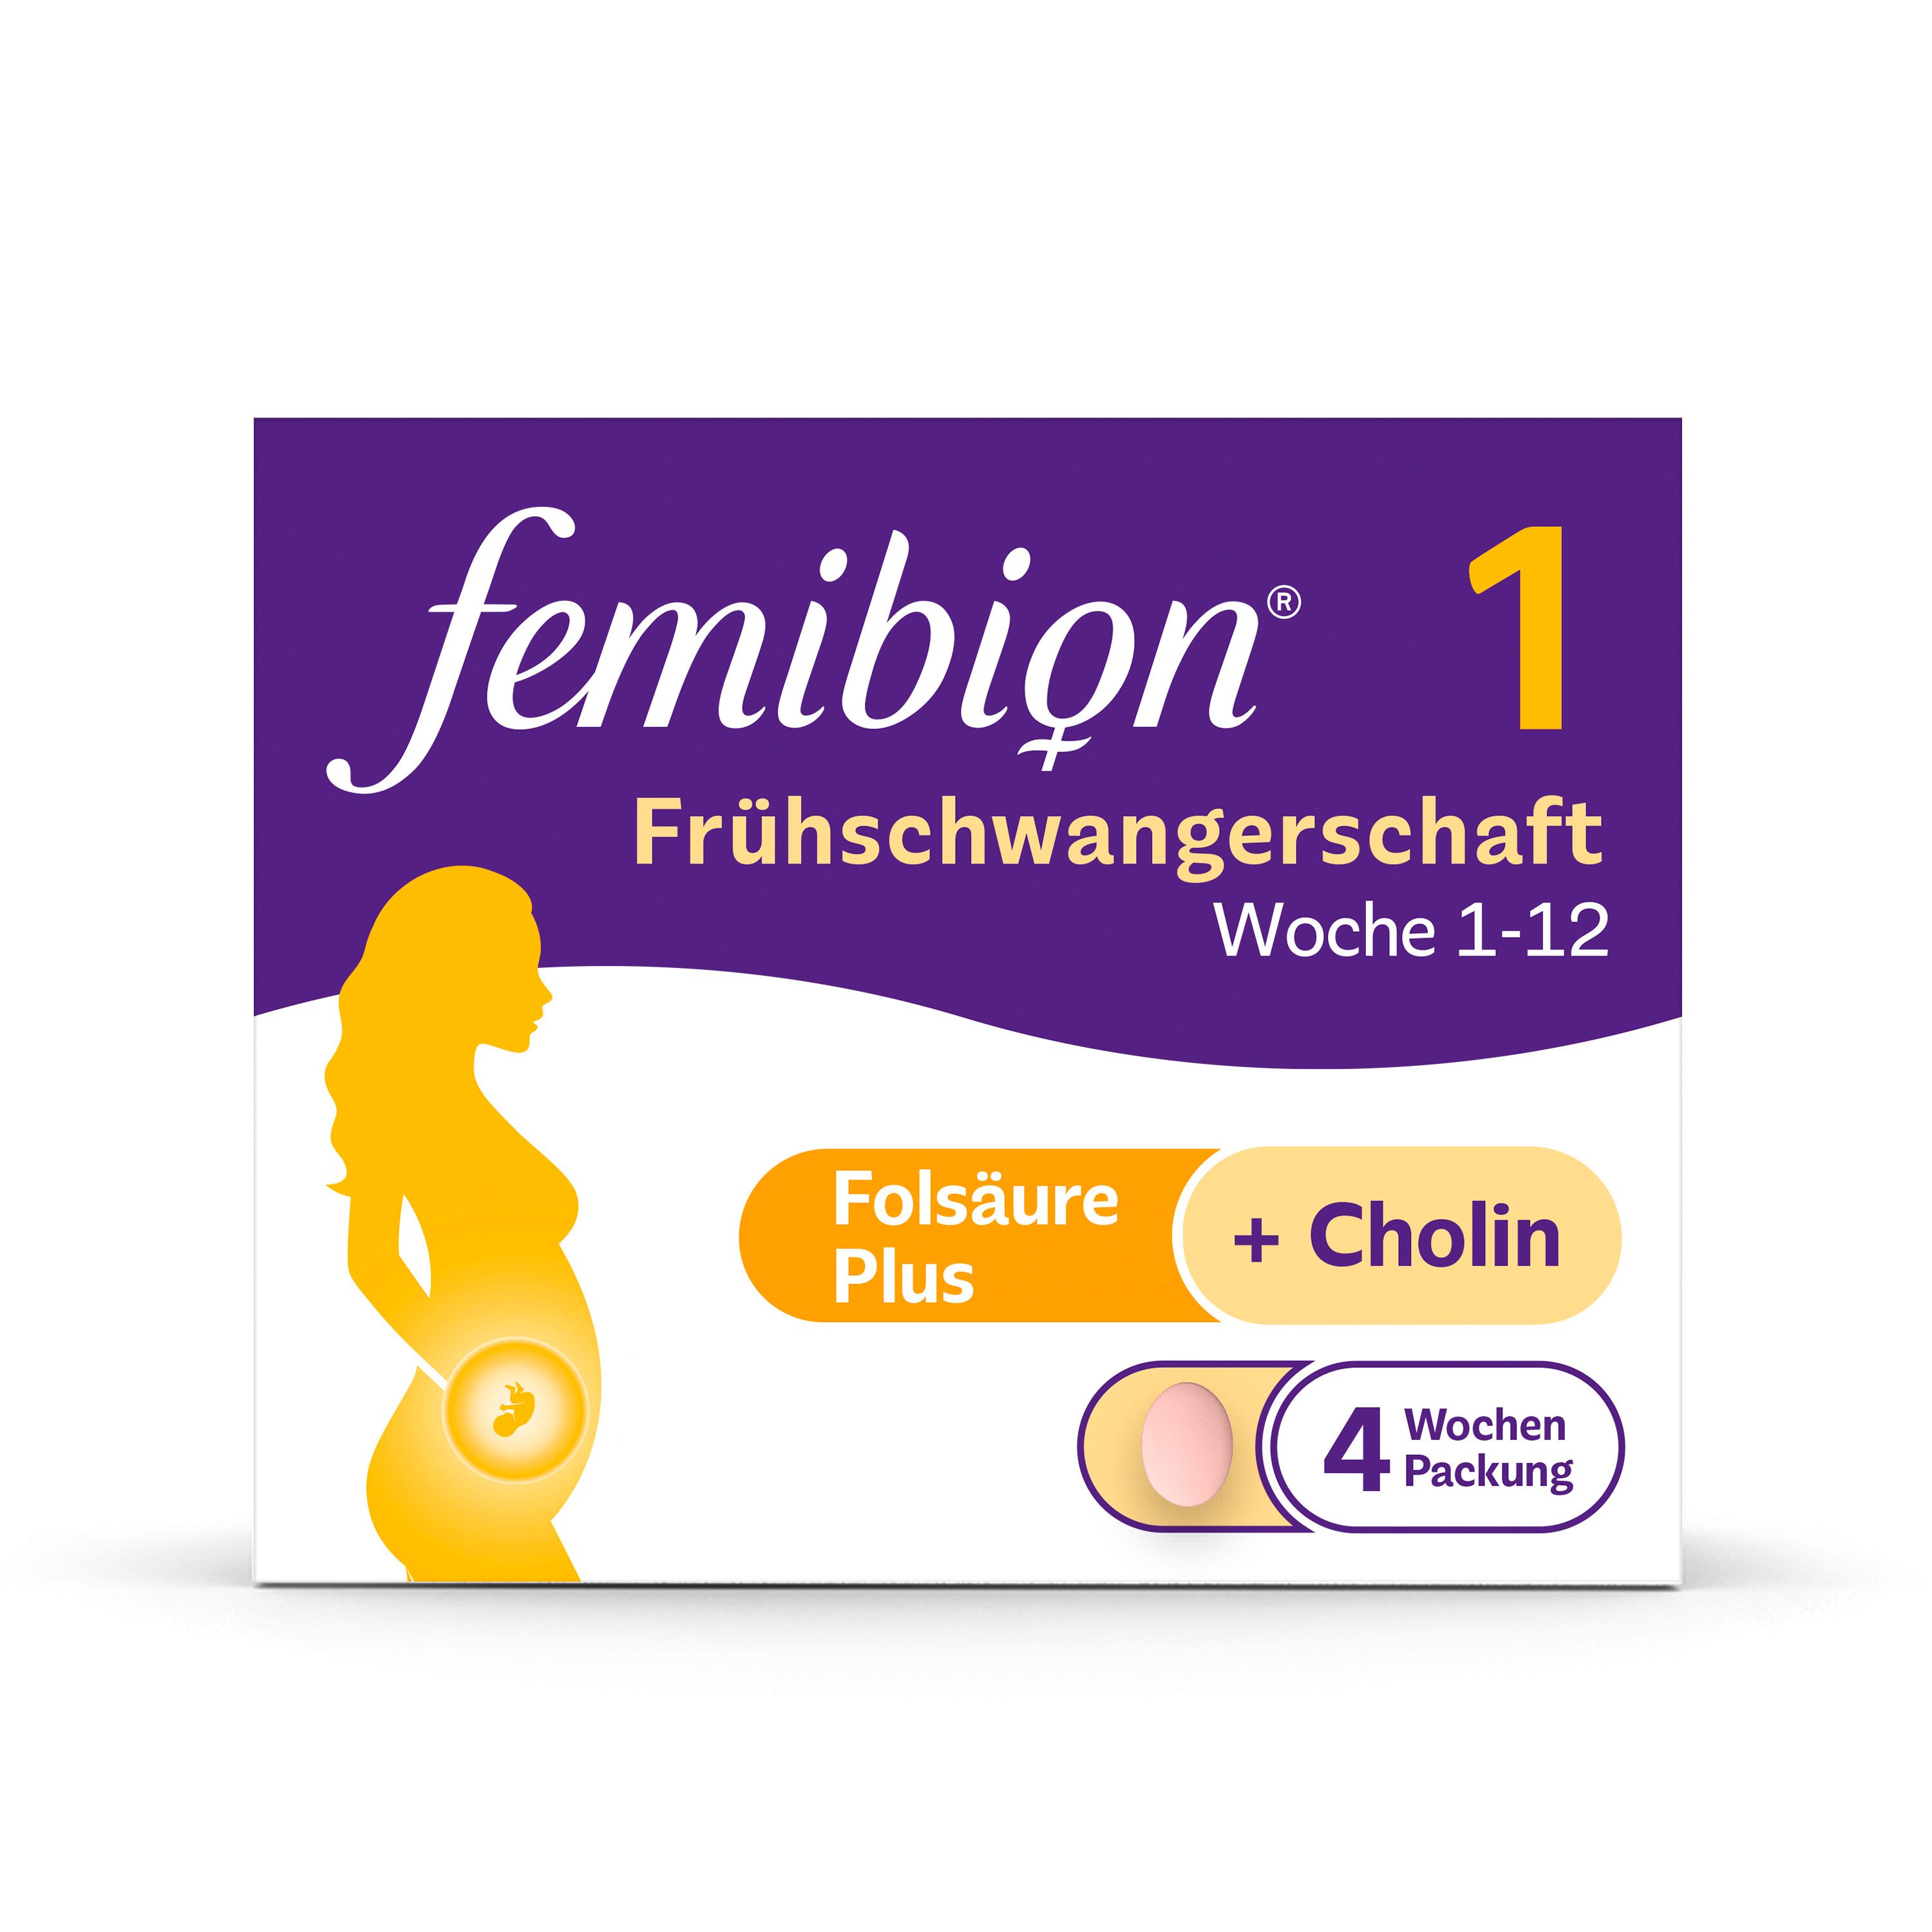 Femibion® 1 Frühschwangerschaft - Jetzt 10% sparen mit Code 'Fem10'